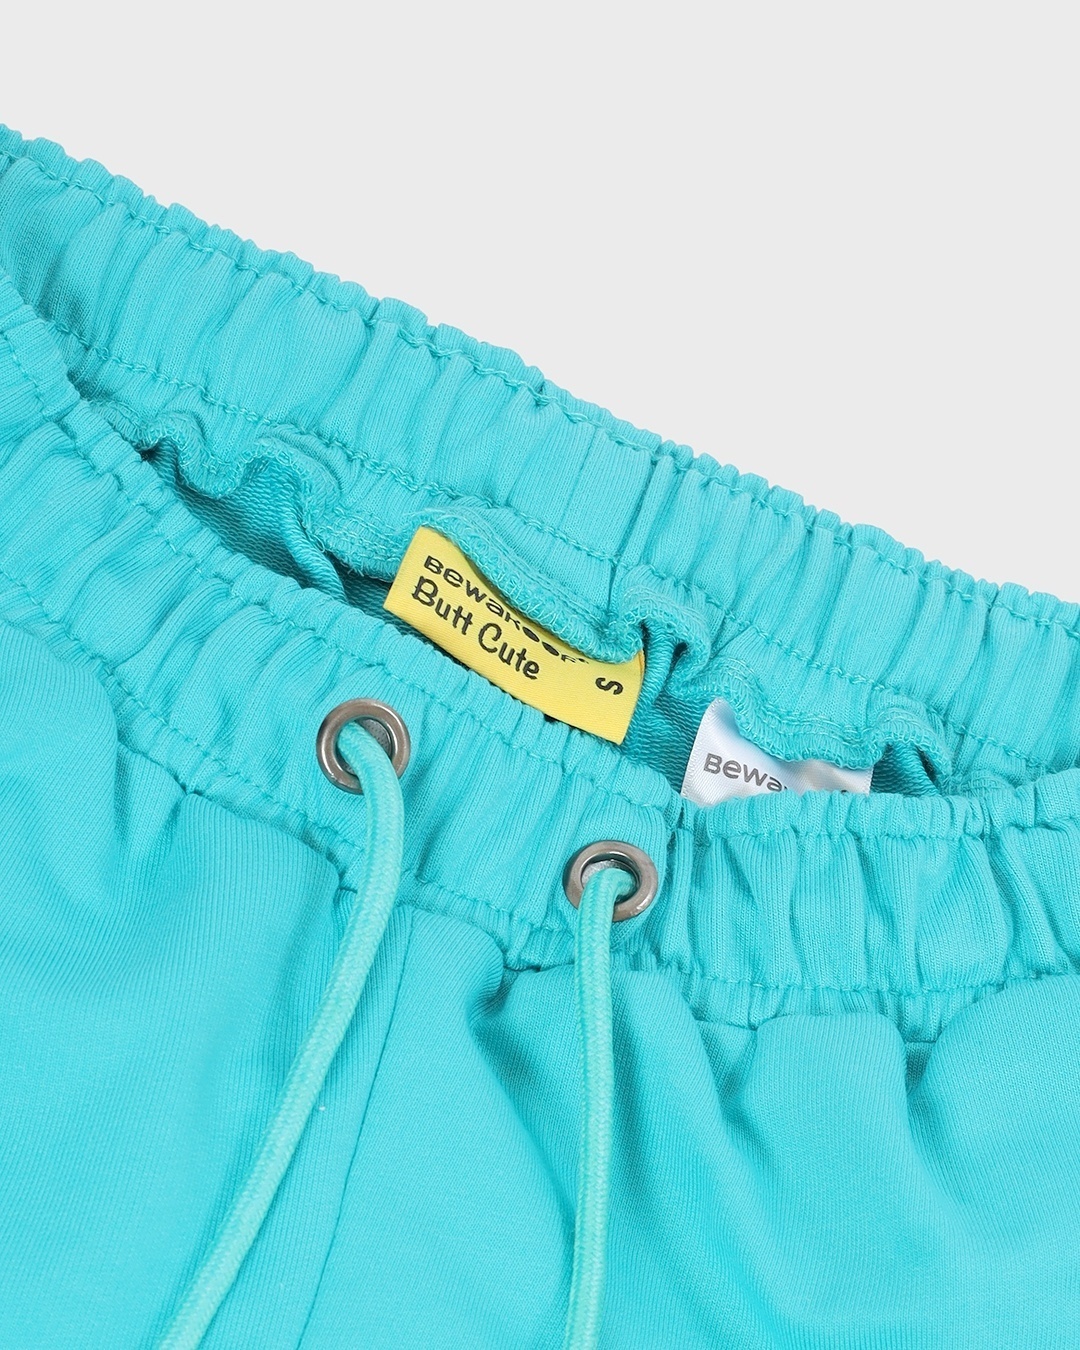 Shop Women's Blue Regular Shorts